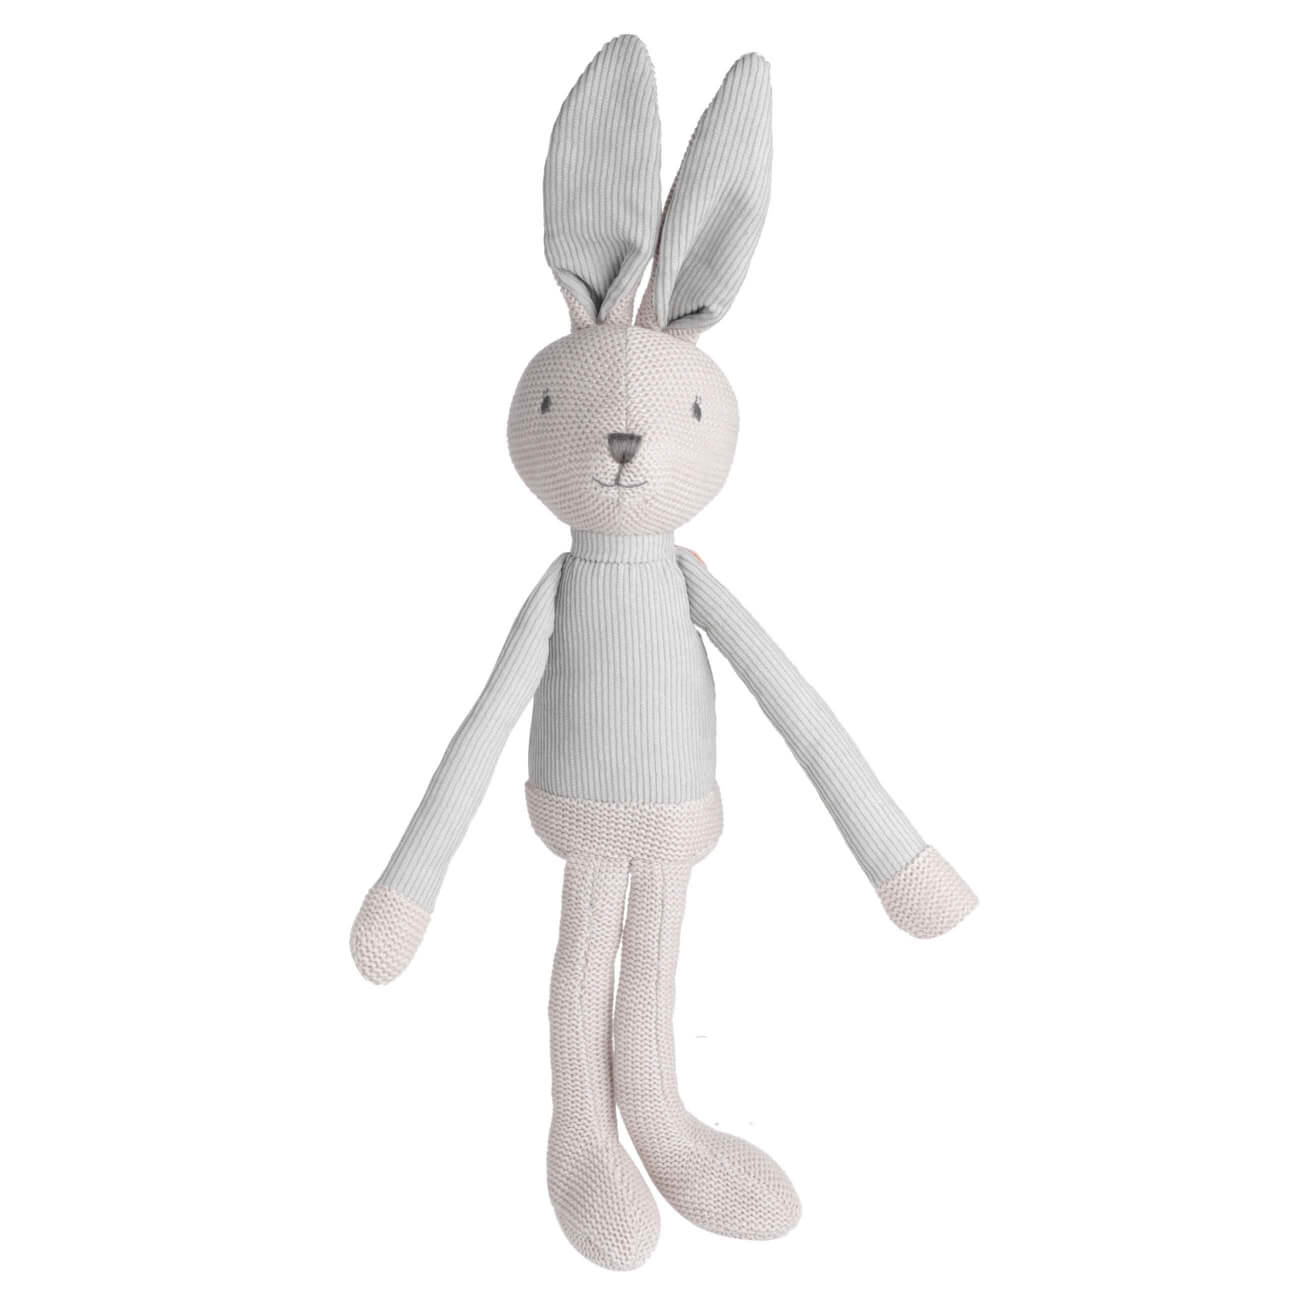 Игрушка, 35 см, мягкая, хлопок, бежевая, Заяц в костюме, Rabbit игрушка антистресс 9 см полиуретан серая заяц rabbit